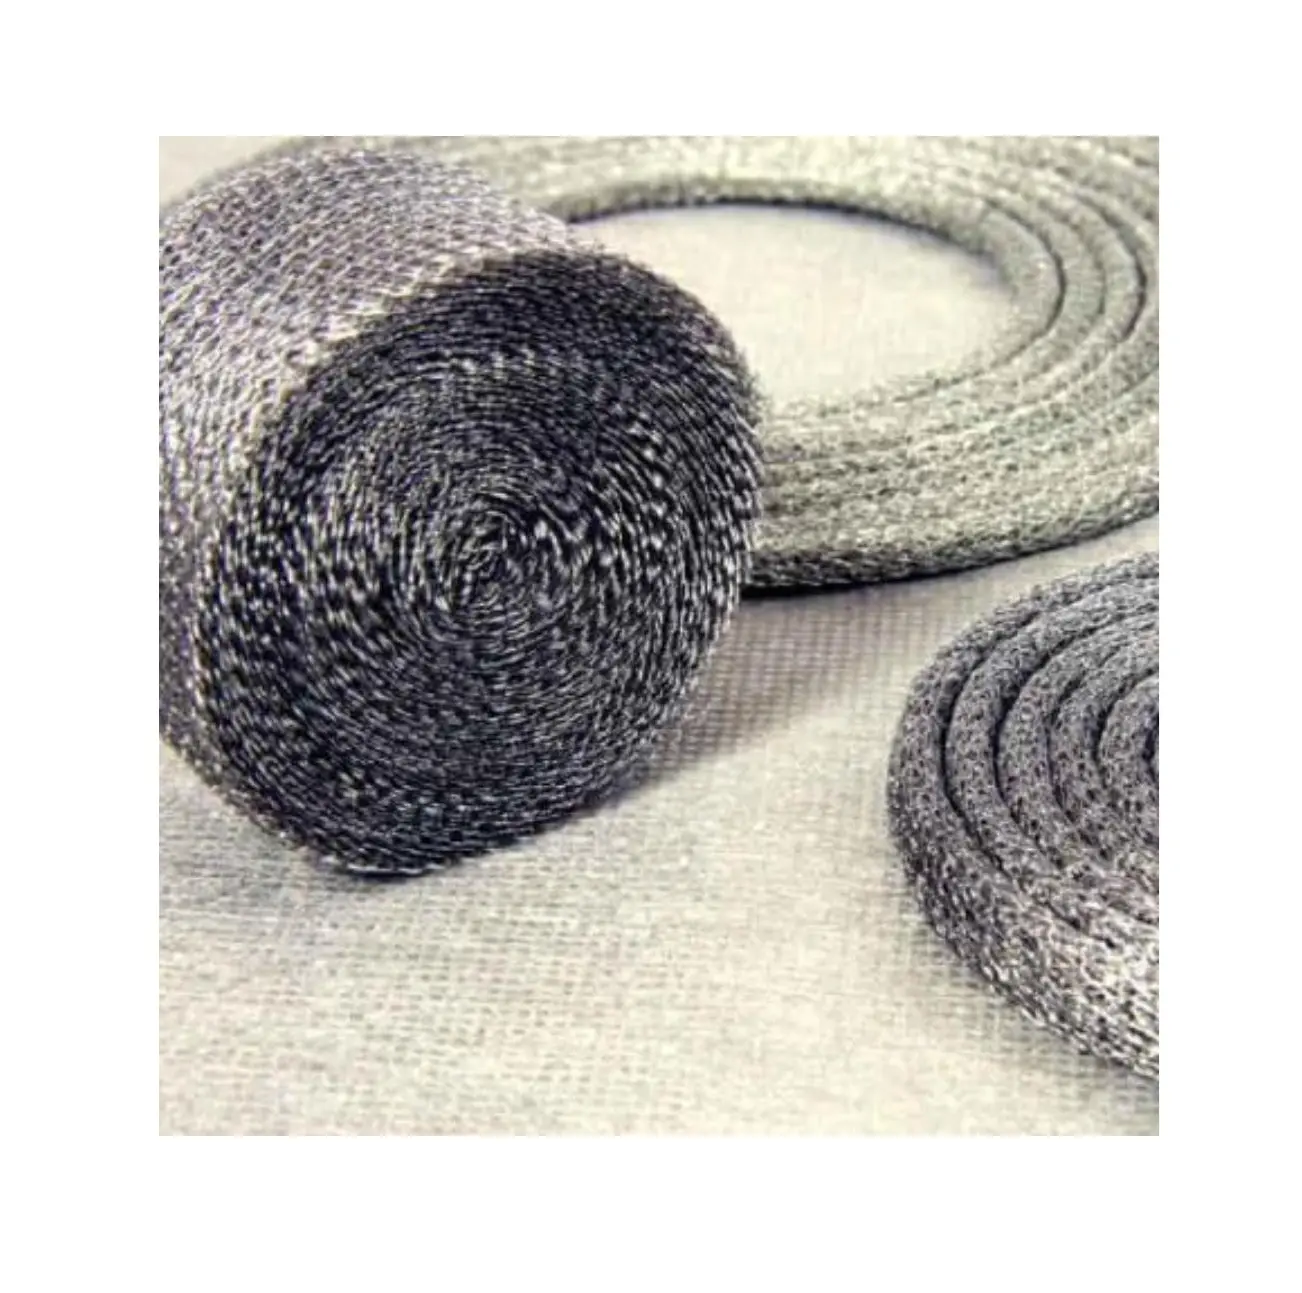 Schlussverkauf flexible hitzebeständige Drahtmaschrollen Stahldrahtmasch für industriellen Gebrauch in Großmenge aus Indien verfügbar